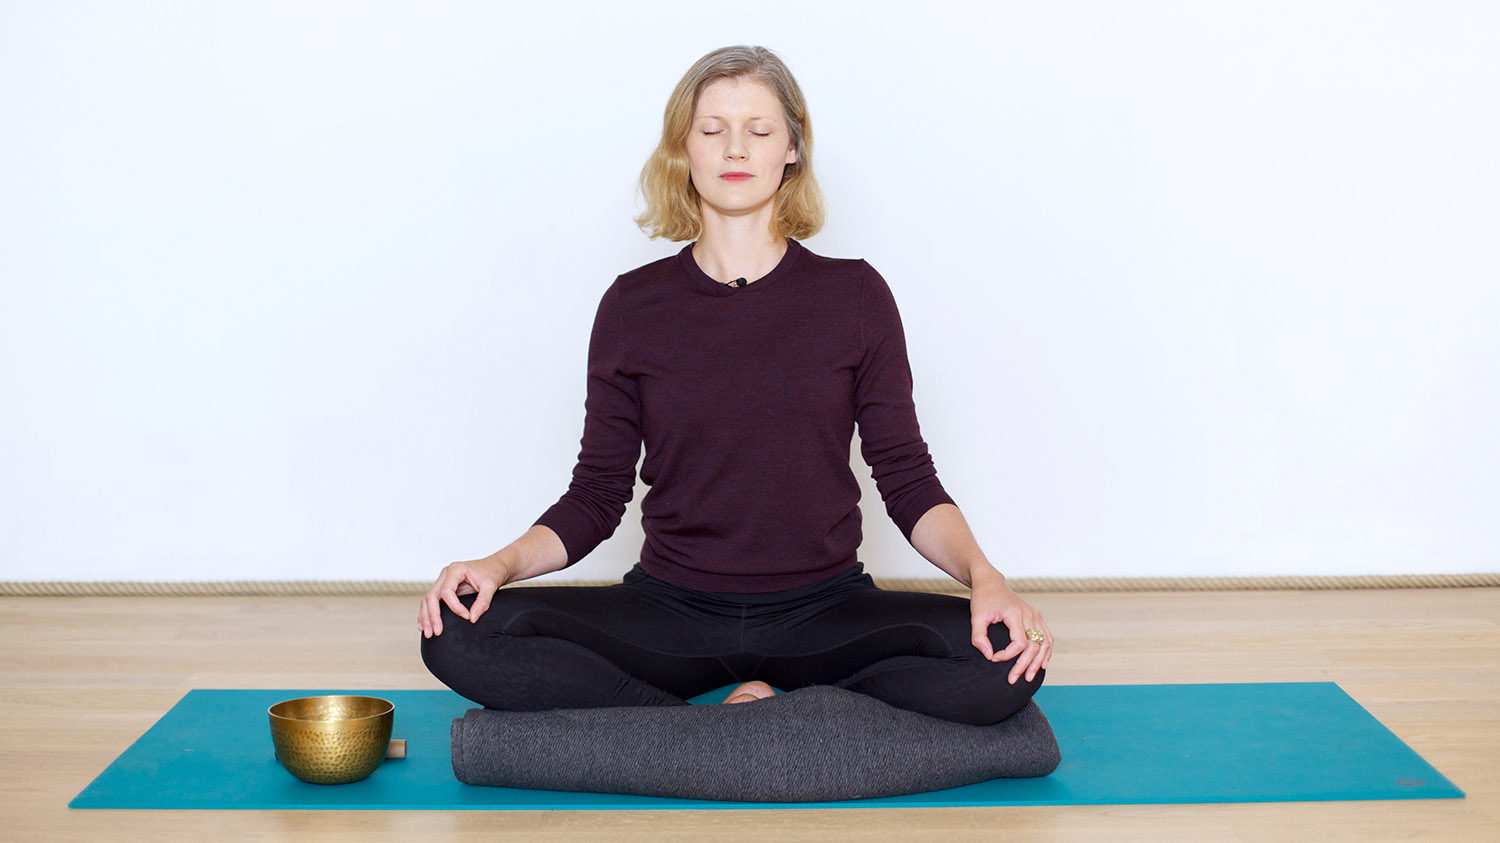 Méditation relaxante contre le stress et l’anxiété | Cours de yoga en ligne avec Juliette de Cointet | Méditation